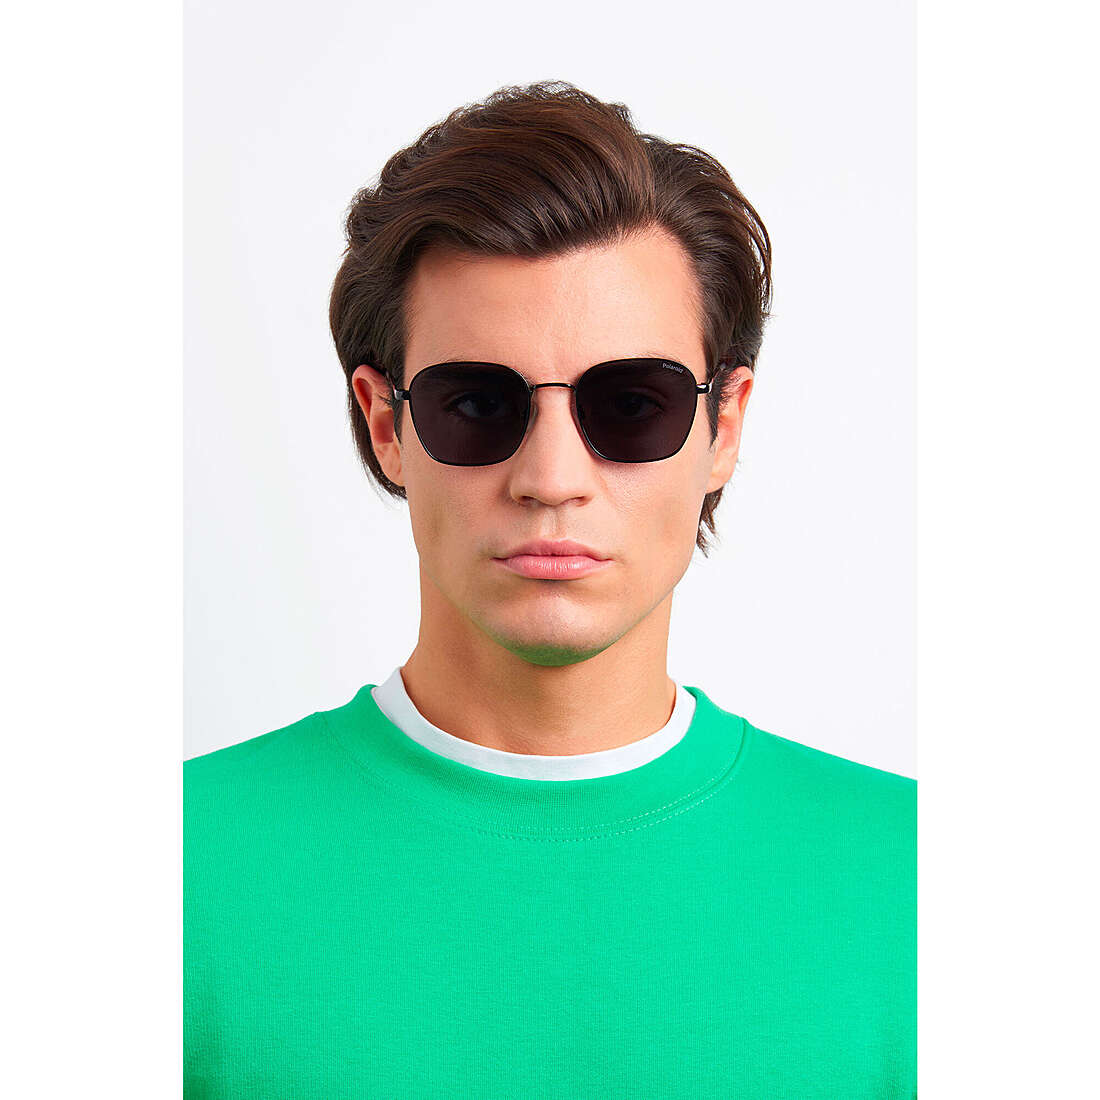 Polaroid occhiali da sole Cool unisex 20480980753M9 indosso